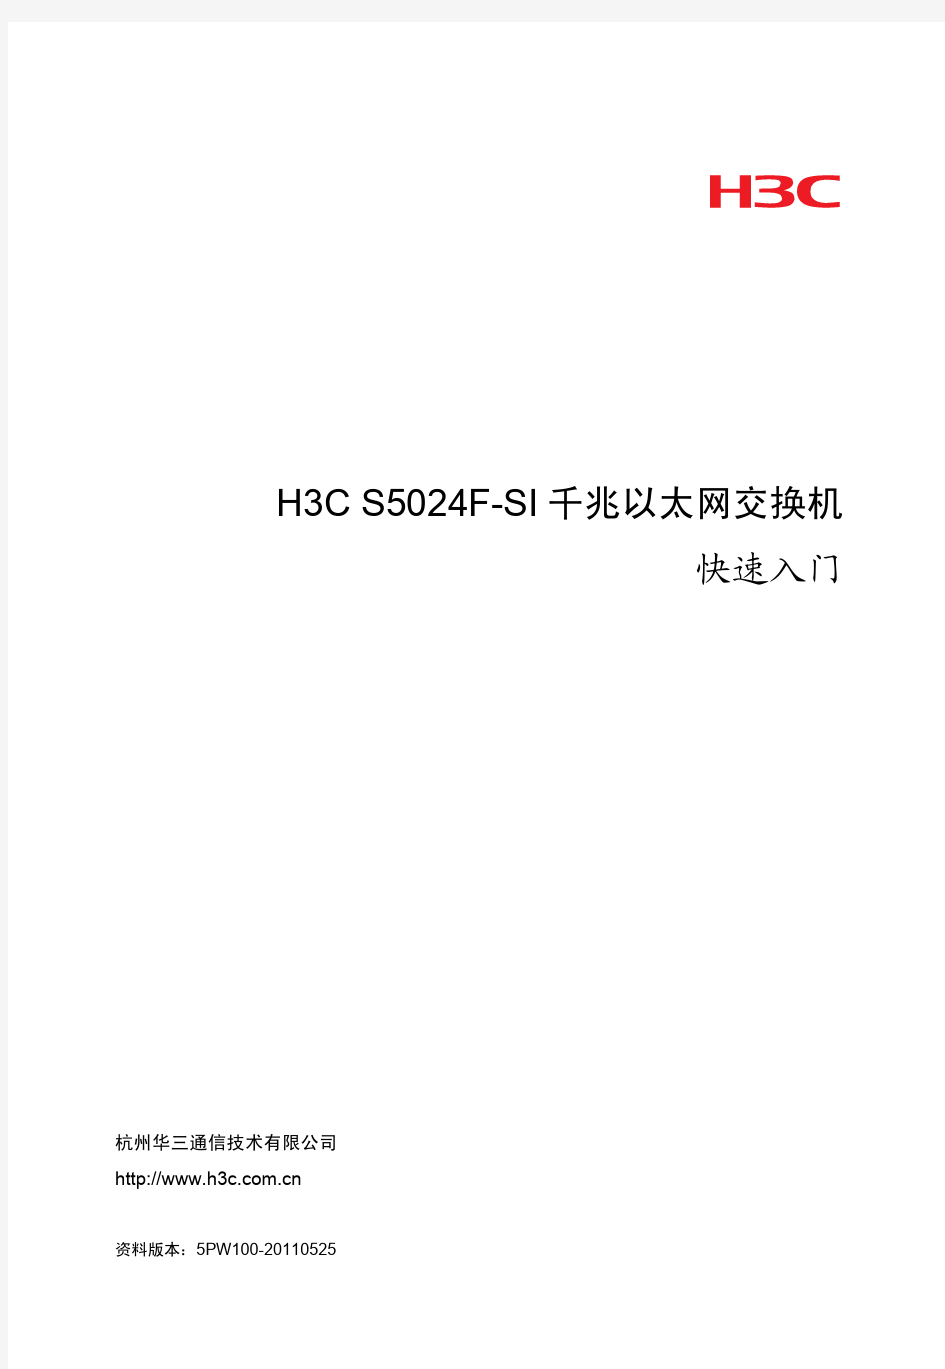 H3C S5024F-SI千兆以太网交换机 快速入门-5PW100-整本手册